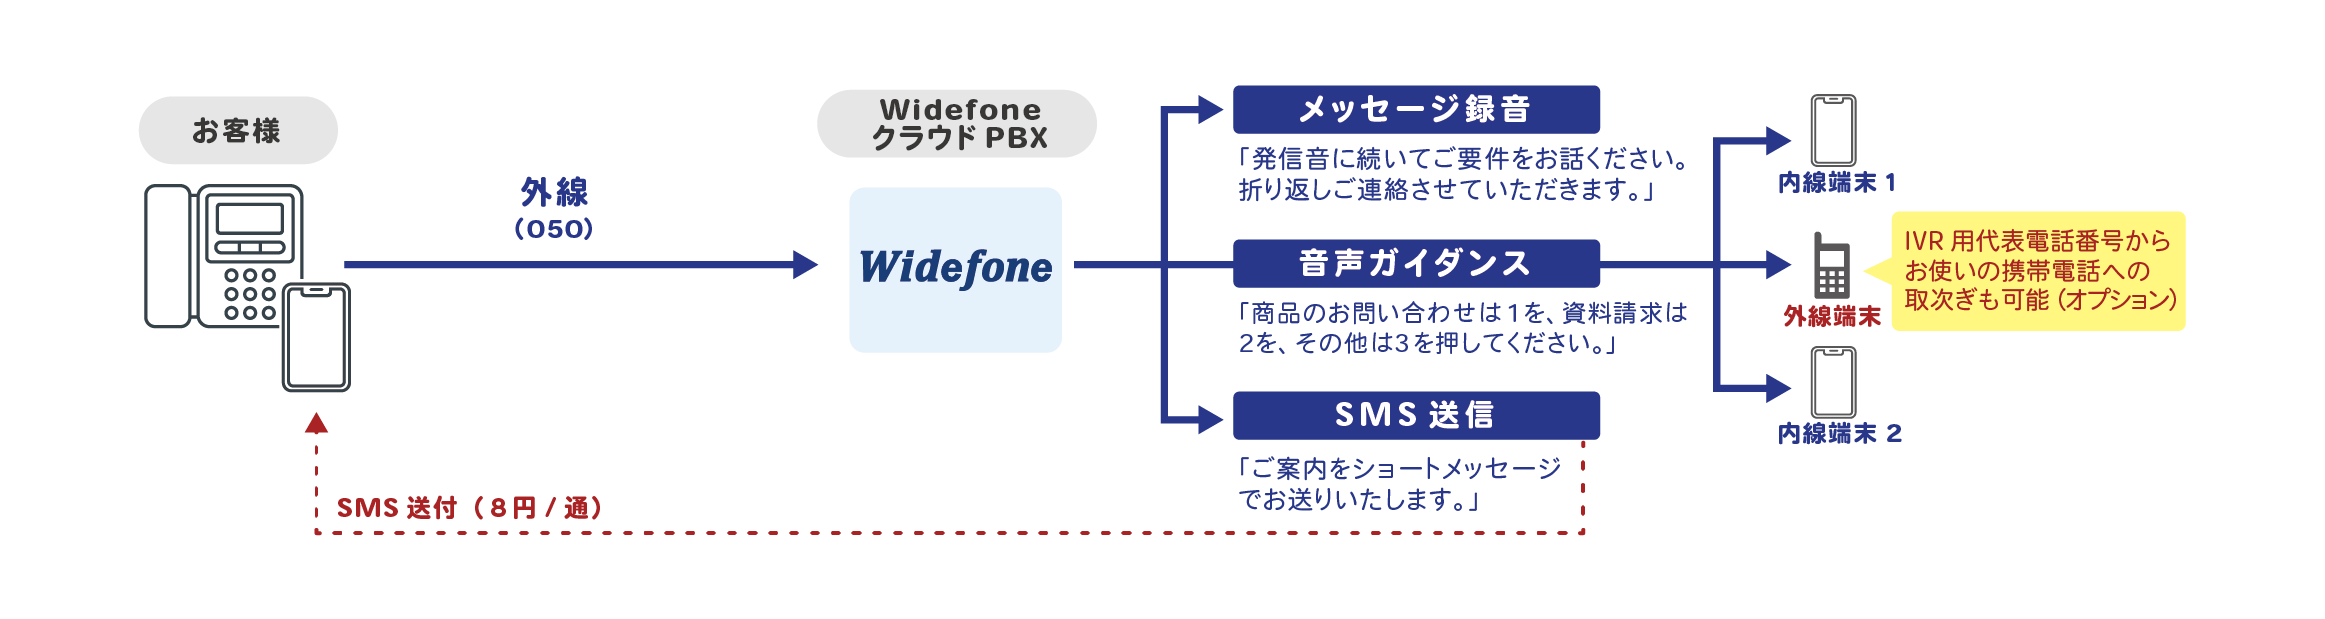 自動音声応答サービス Widefone「内線IVR」オプションのケース